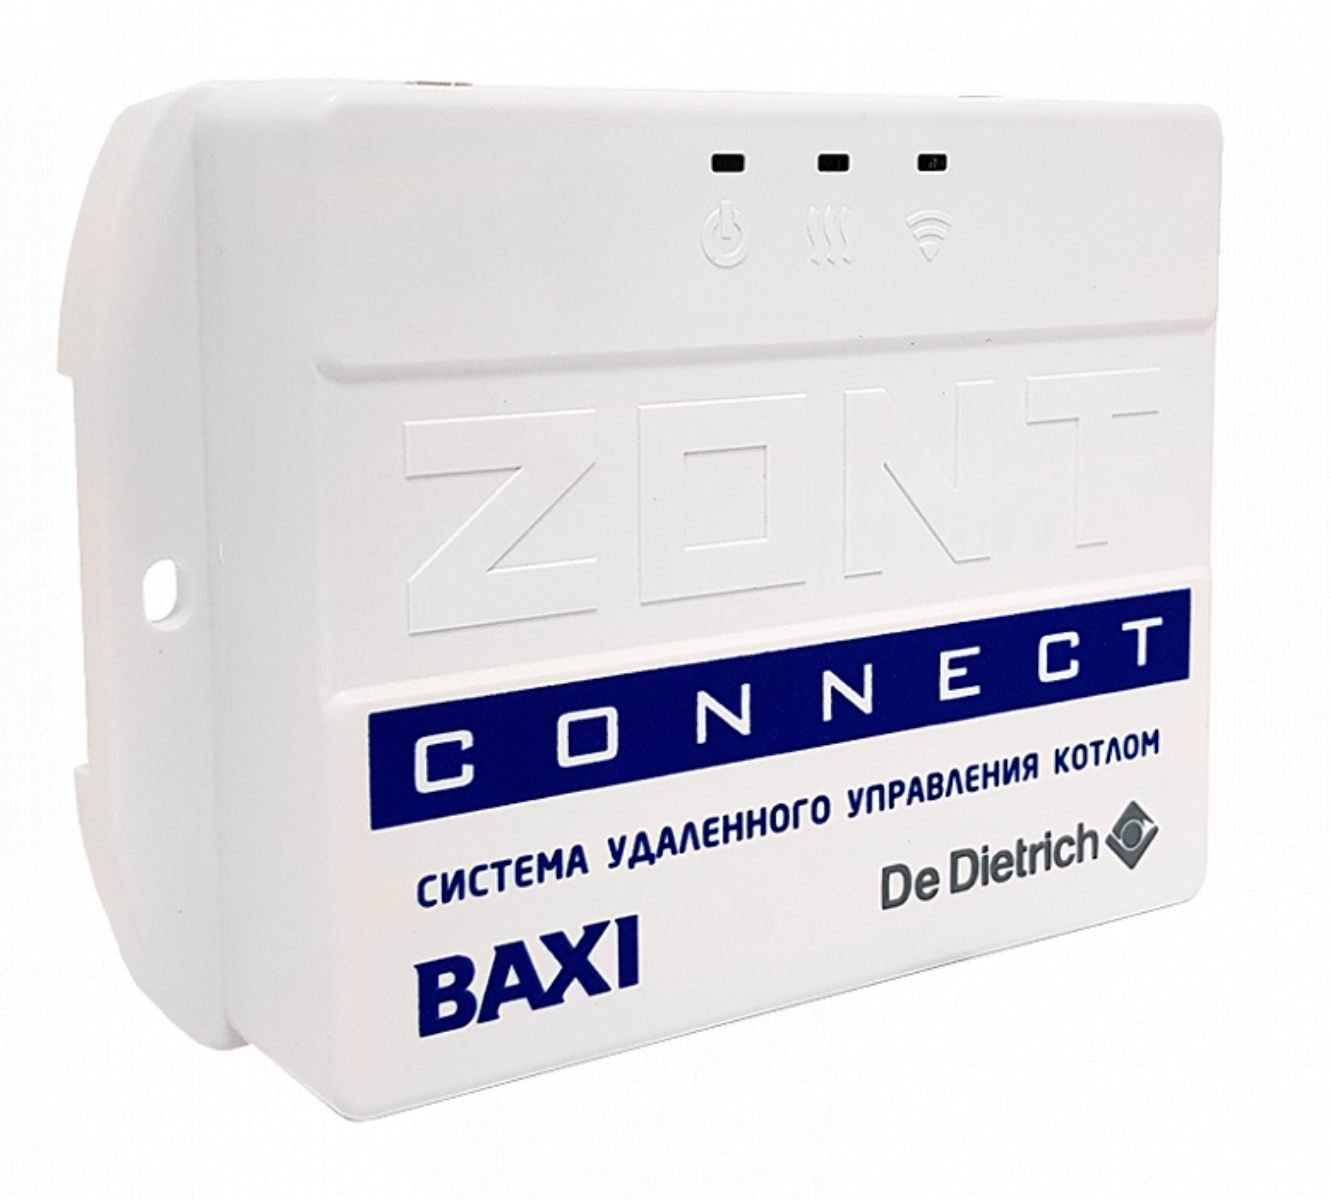 Baxi zont connect. Zont connect Baxi. Система удаленного управления котлом Baxi Zont connect. Baxi Zont connect ml 00003824. GSM модуль для котлов Baxi.